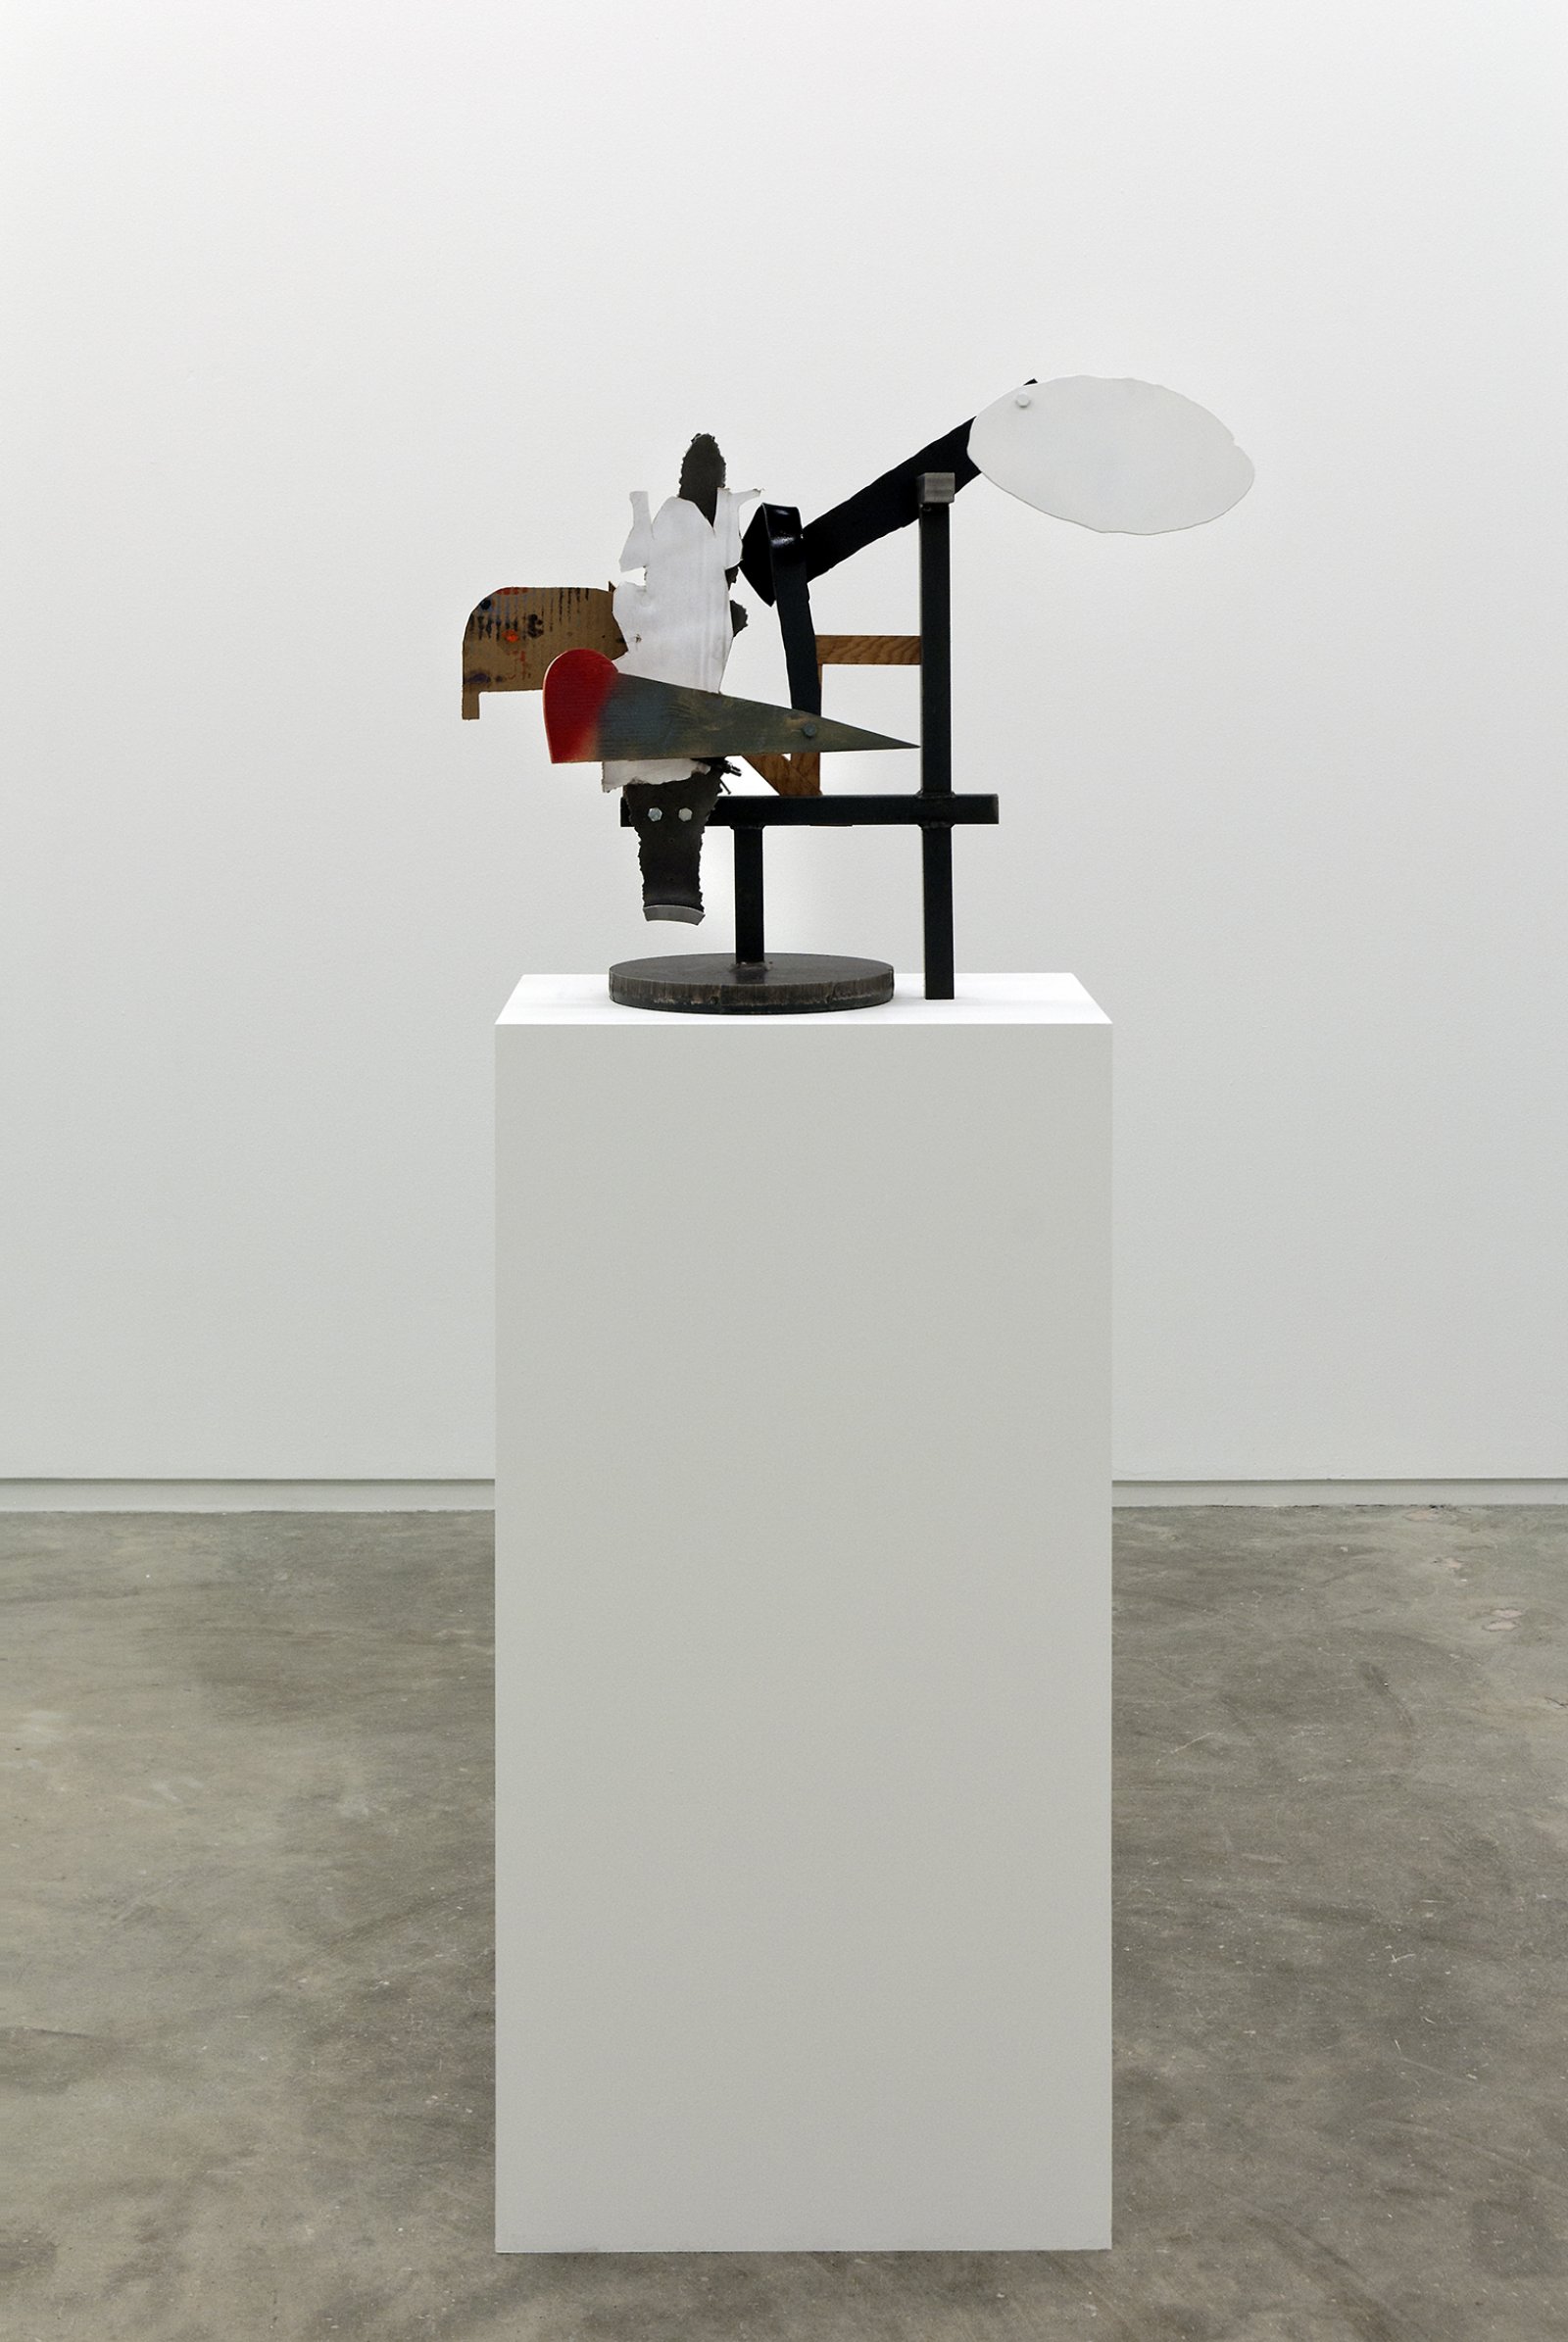 Damian Moppett, Untitled, 2010, steel, wood, cardboard, clamps, 22 x 29 x 8 in. (55 x 72 x 20 cm) by Damian Moppett